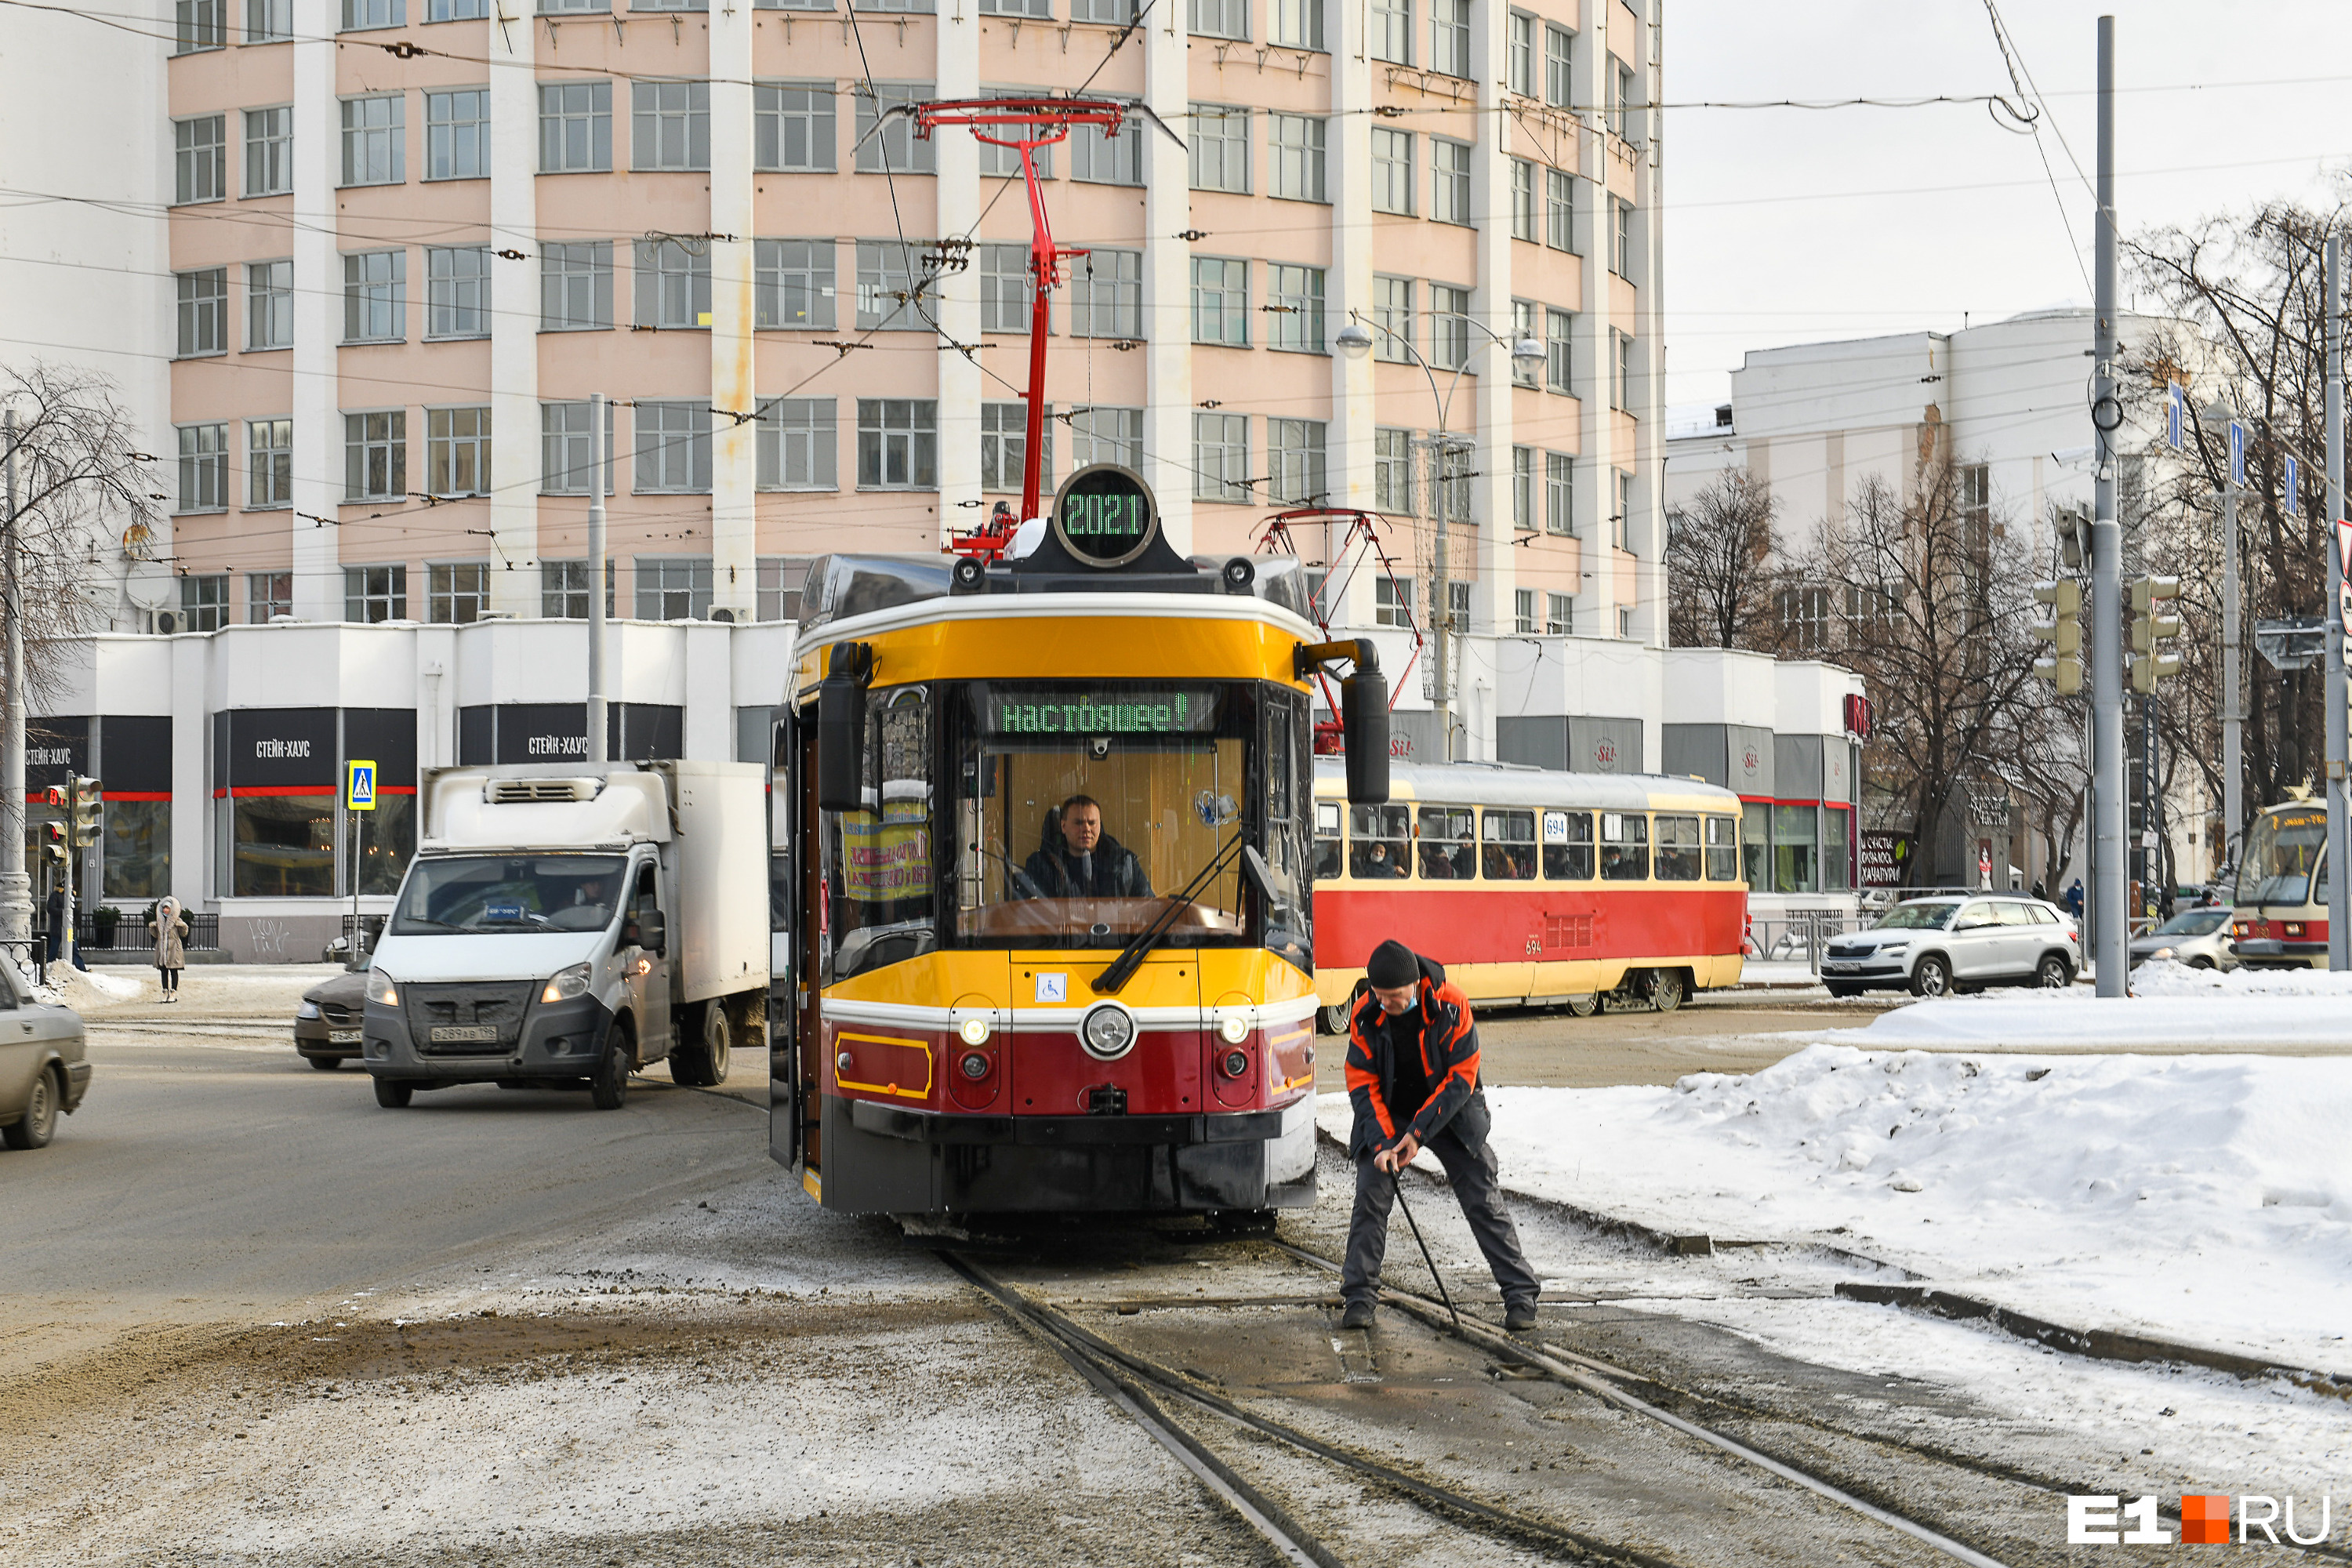 Еще ни один завод в России не брался за выпуск трамваев, выполненных в винтажном стиле